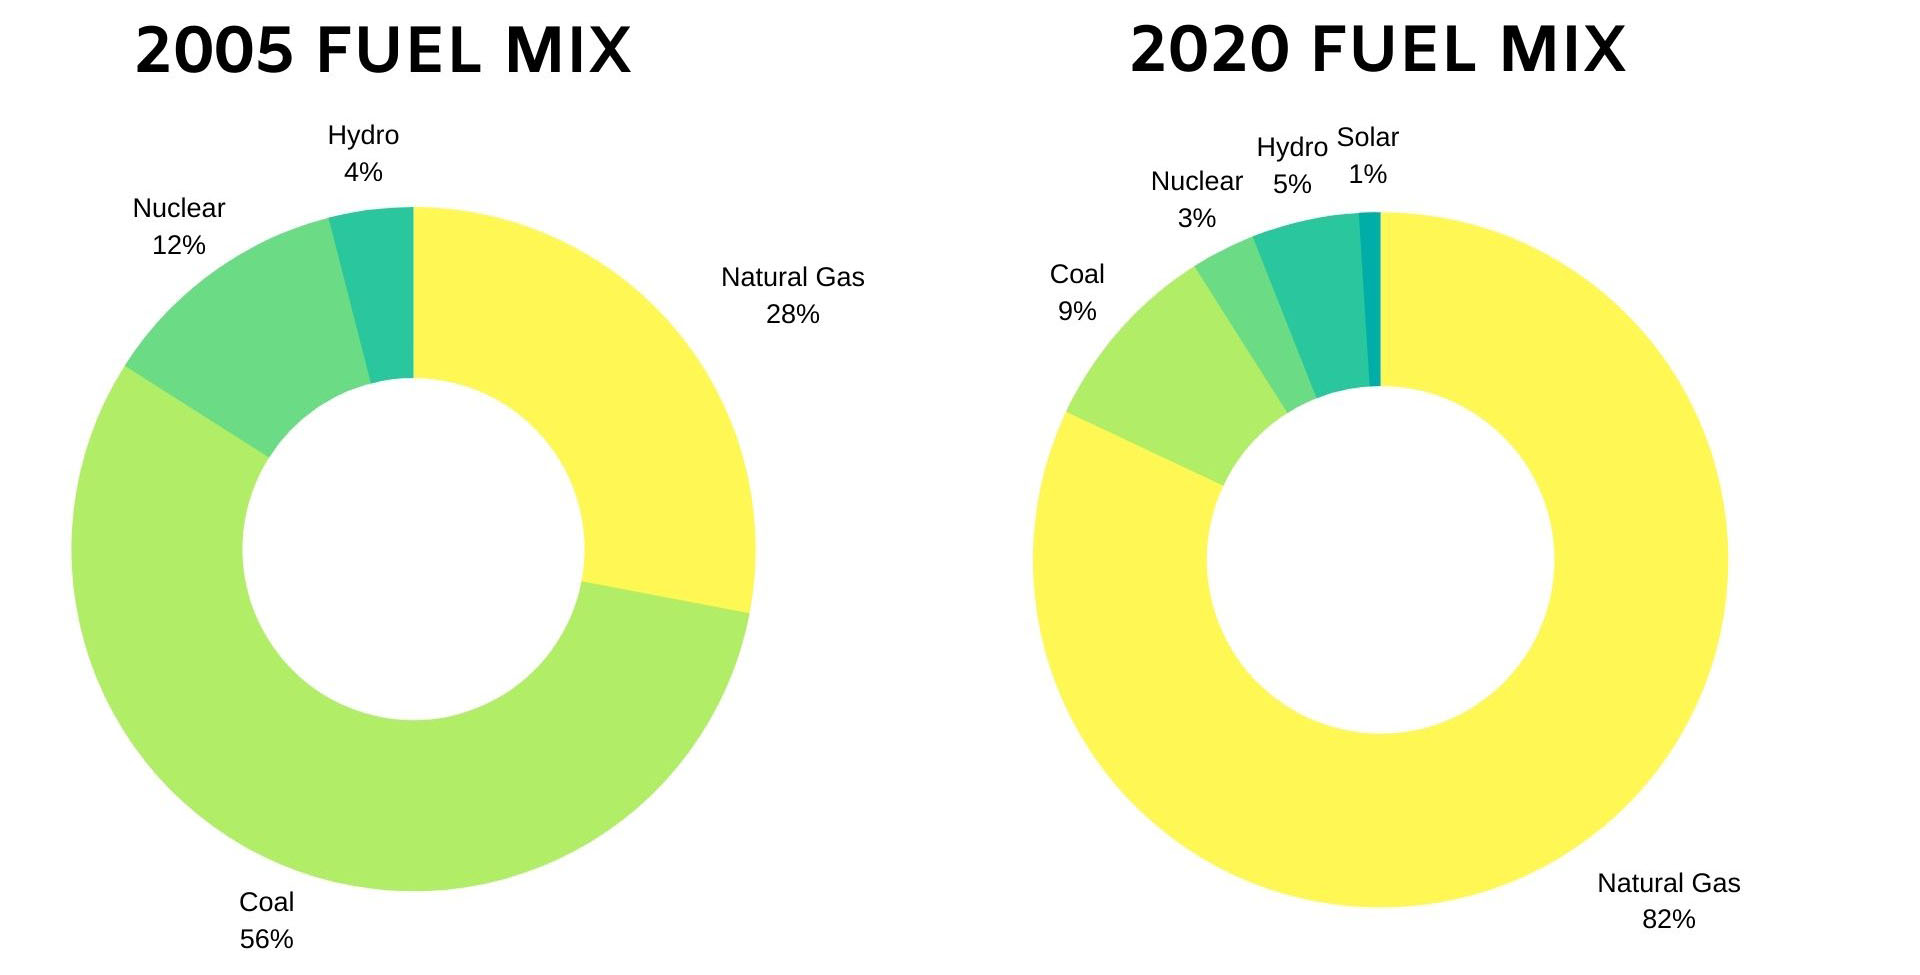 Fuel Mix 2020